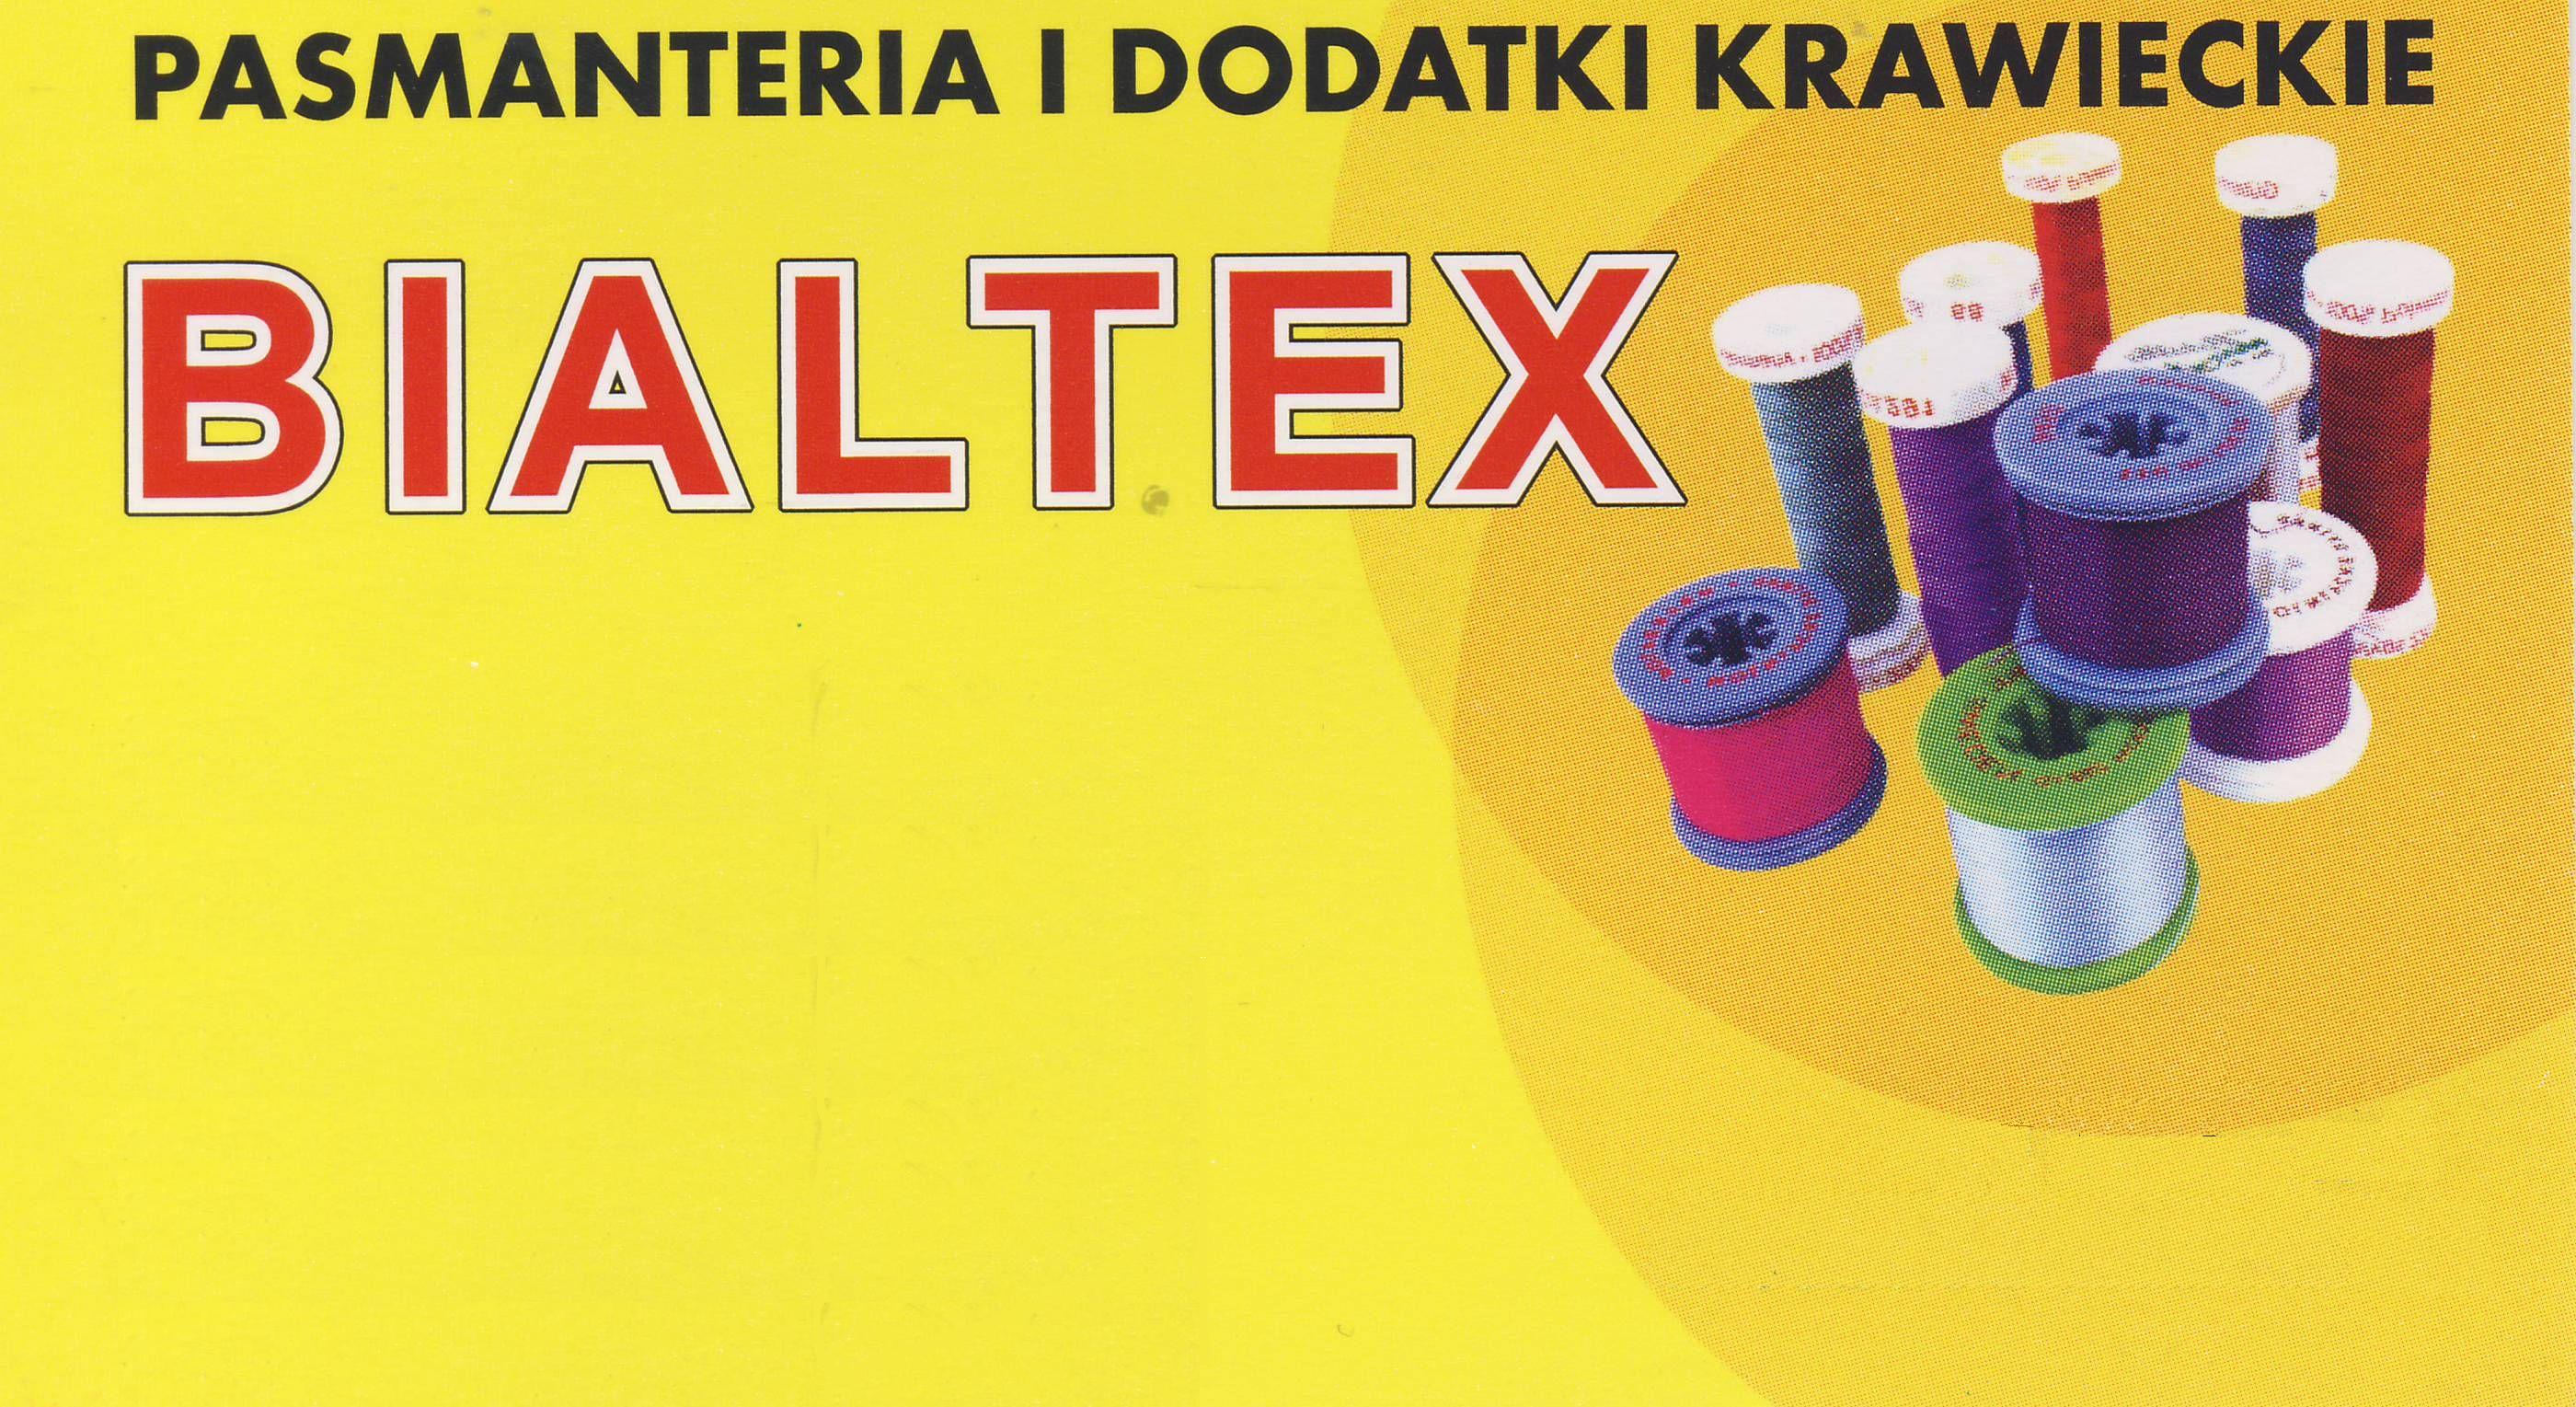 BIALTEX PASMANTERIA I DODATKI KRAWIECKIE - Logo